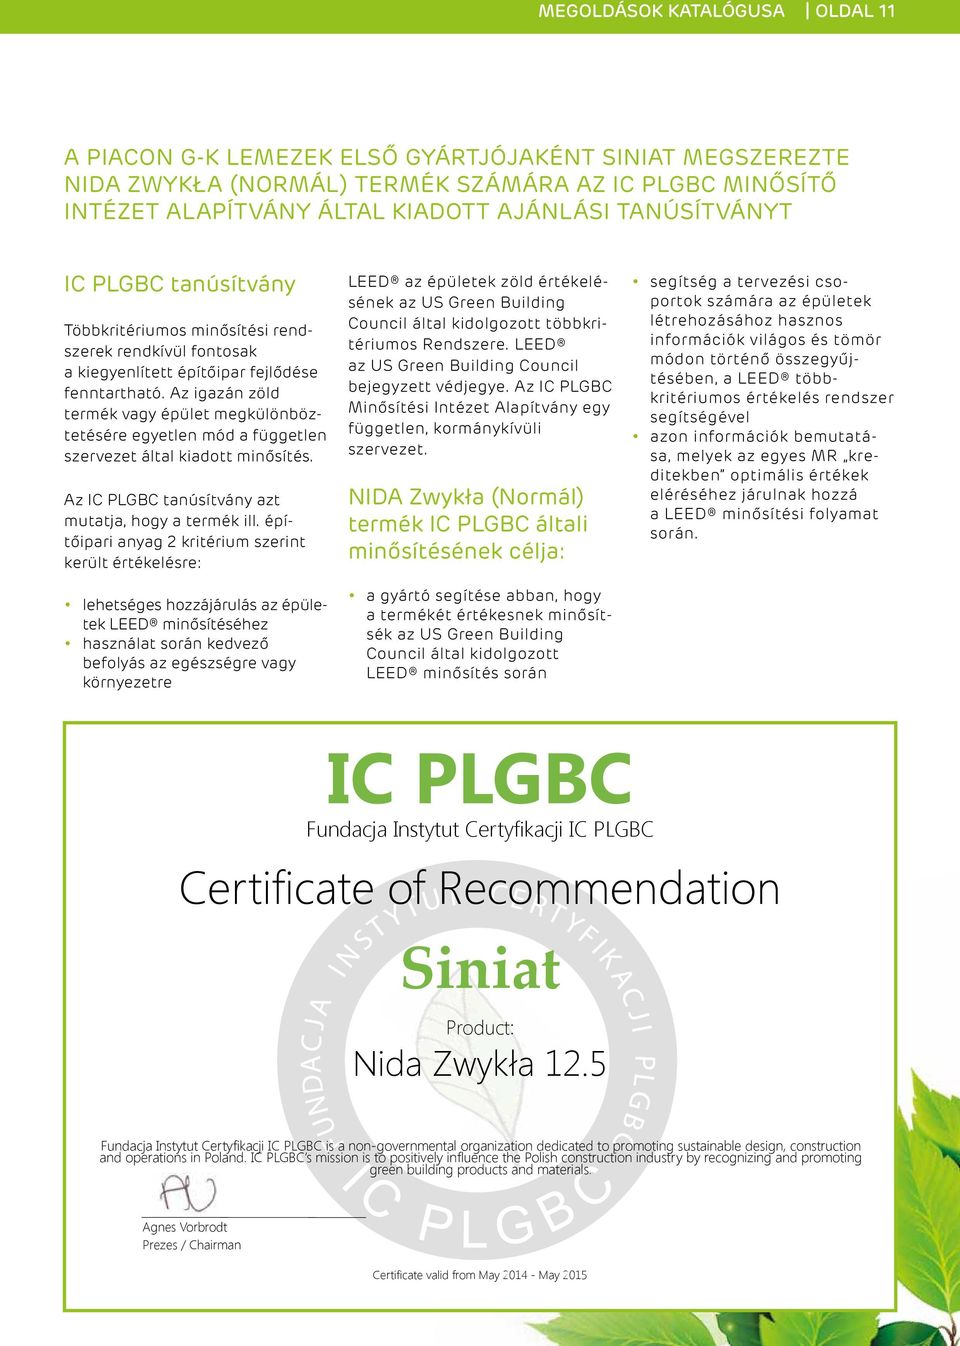 Az igazán zöld termék vagy épület megkülönböztetésére egyetlen mód a független szervezet által kiadott minősítés. Az IC PLGBC tanúsítvány azt mutatja, hogy a termék ill.